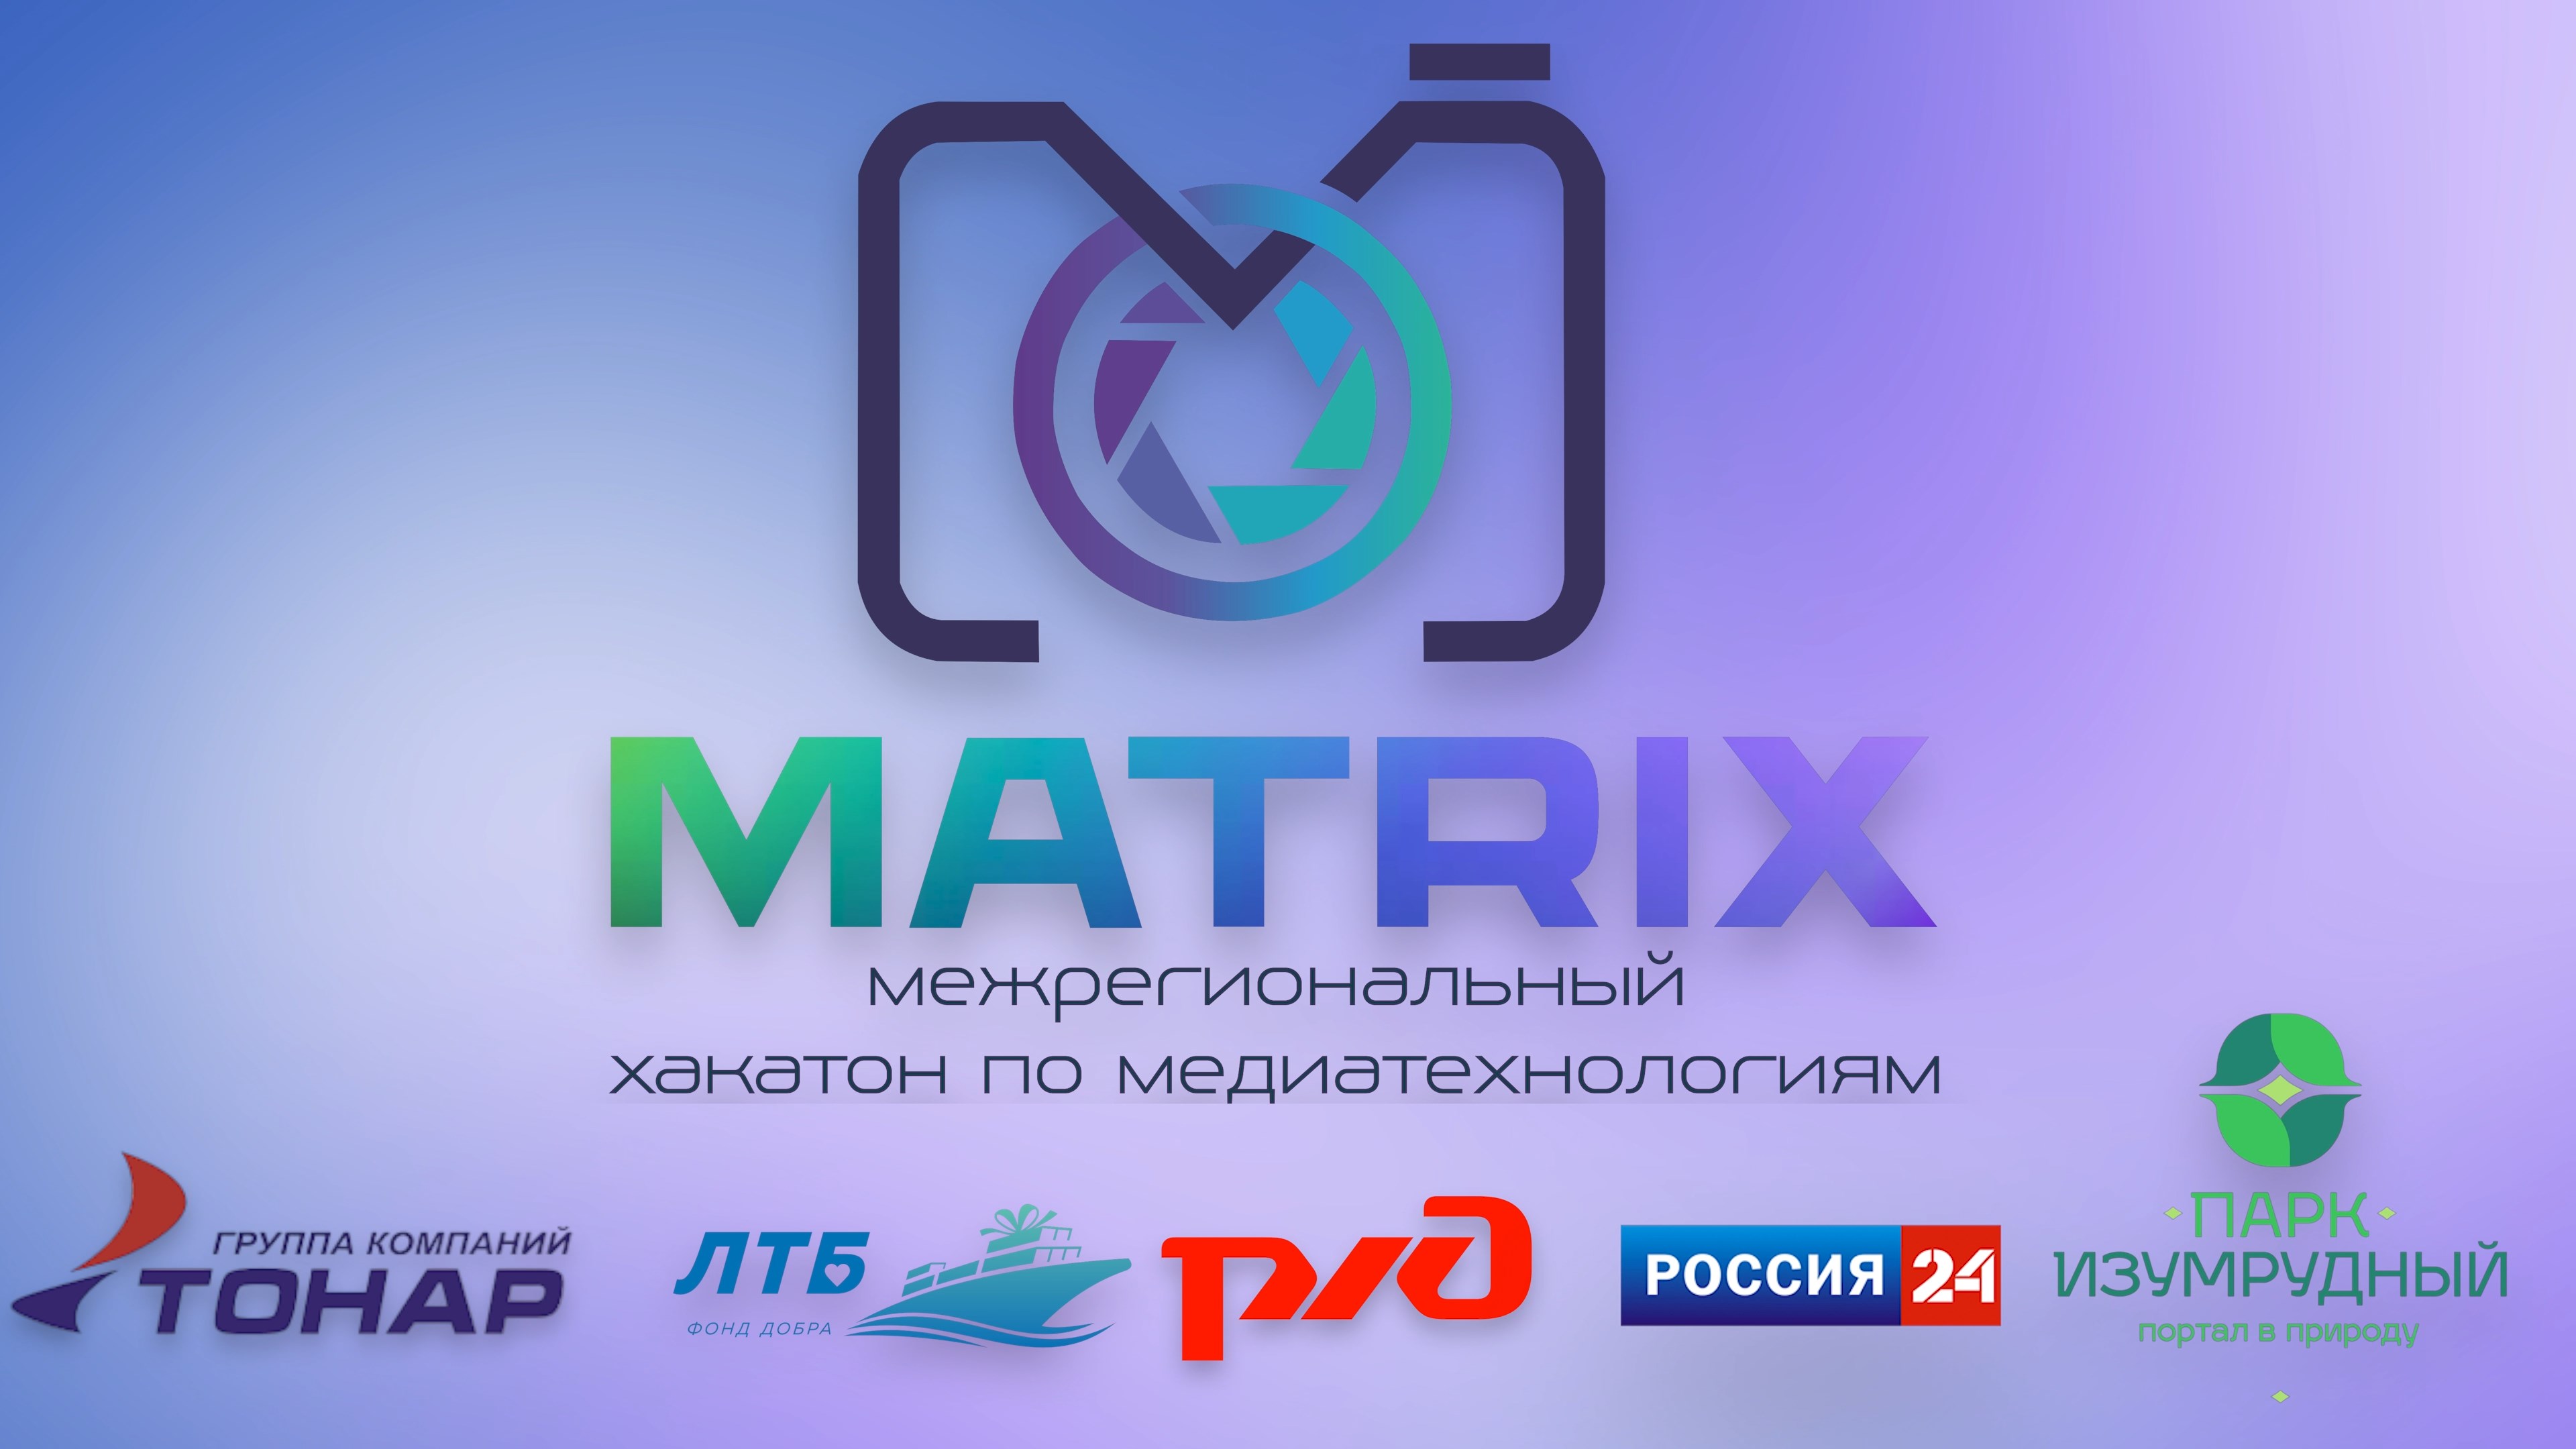 Итоги первого межрегионального хакатона по медиатехнологиям «Маtrix»!